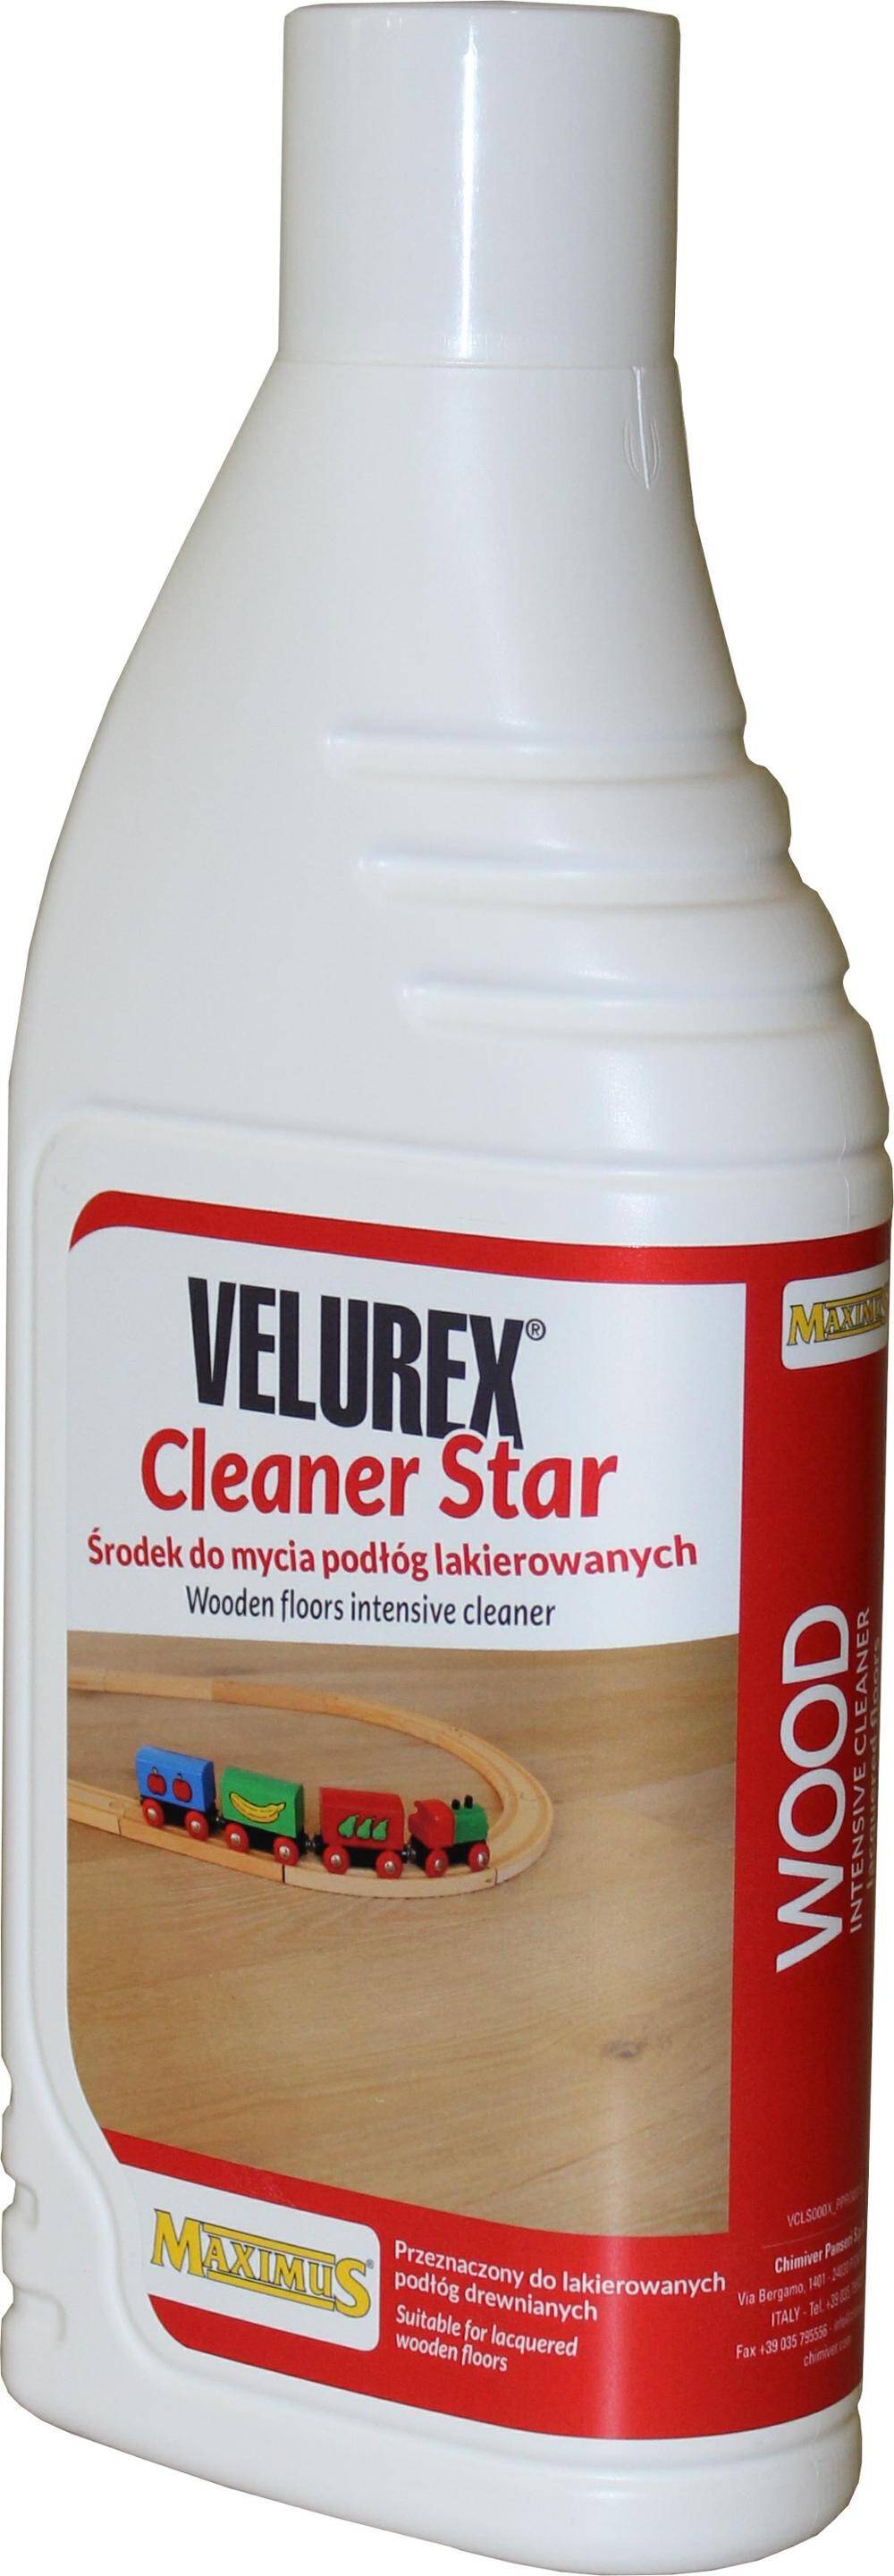 Maximus Velurex Cleaner Star (1L)